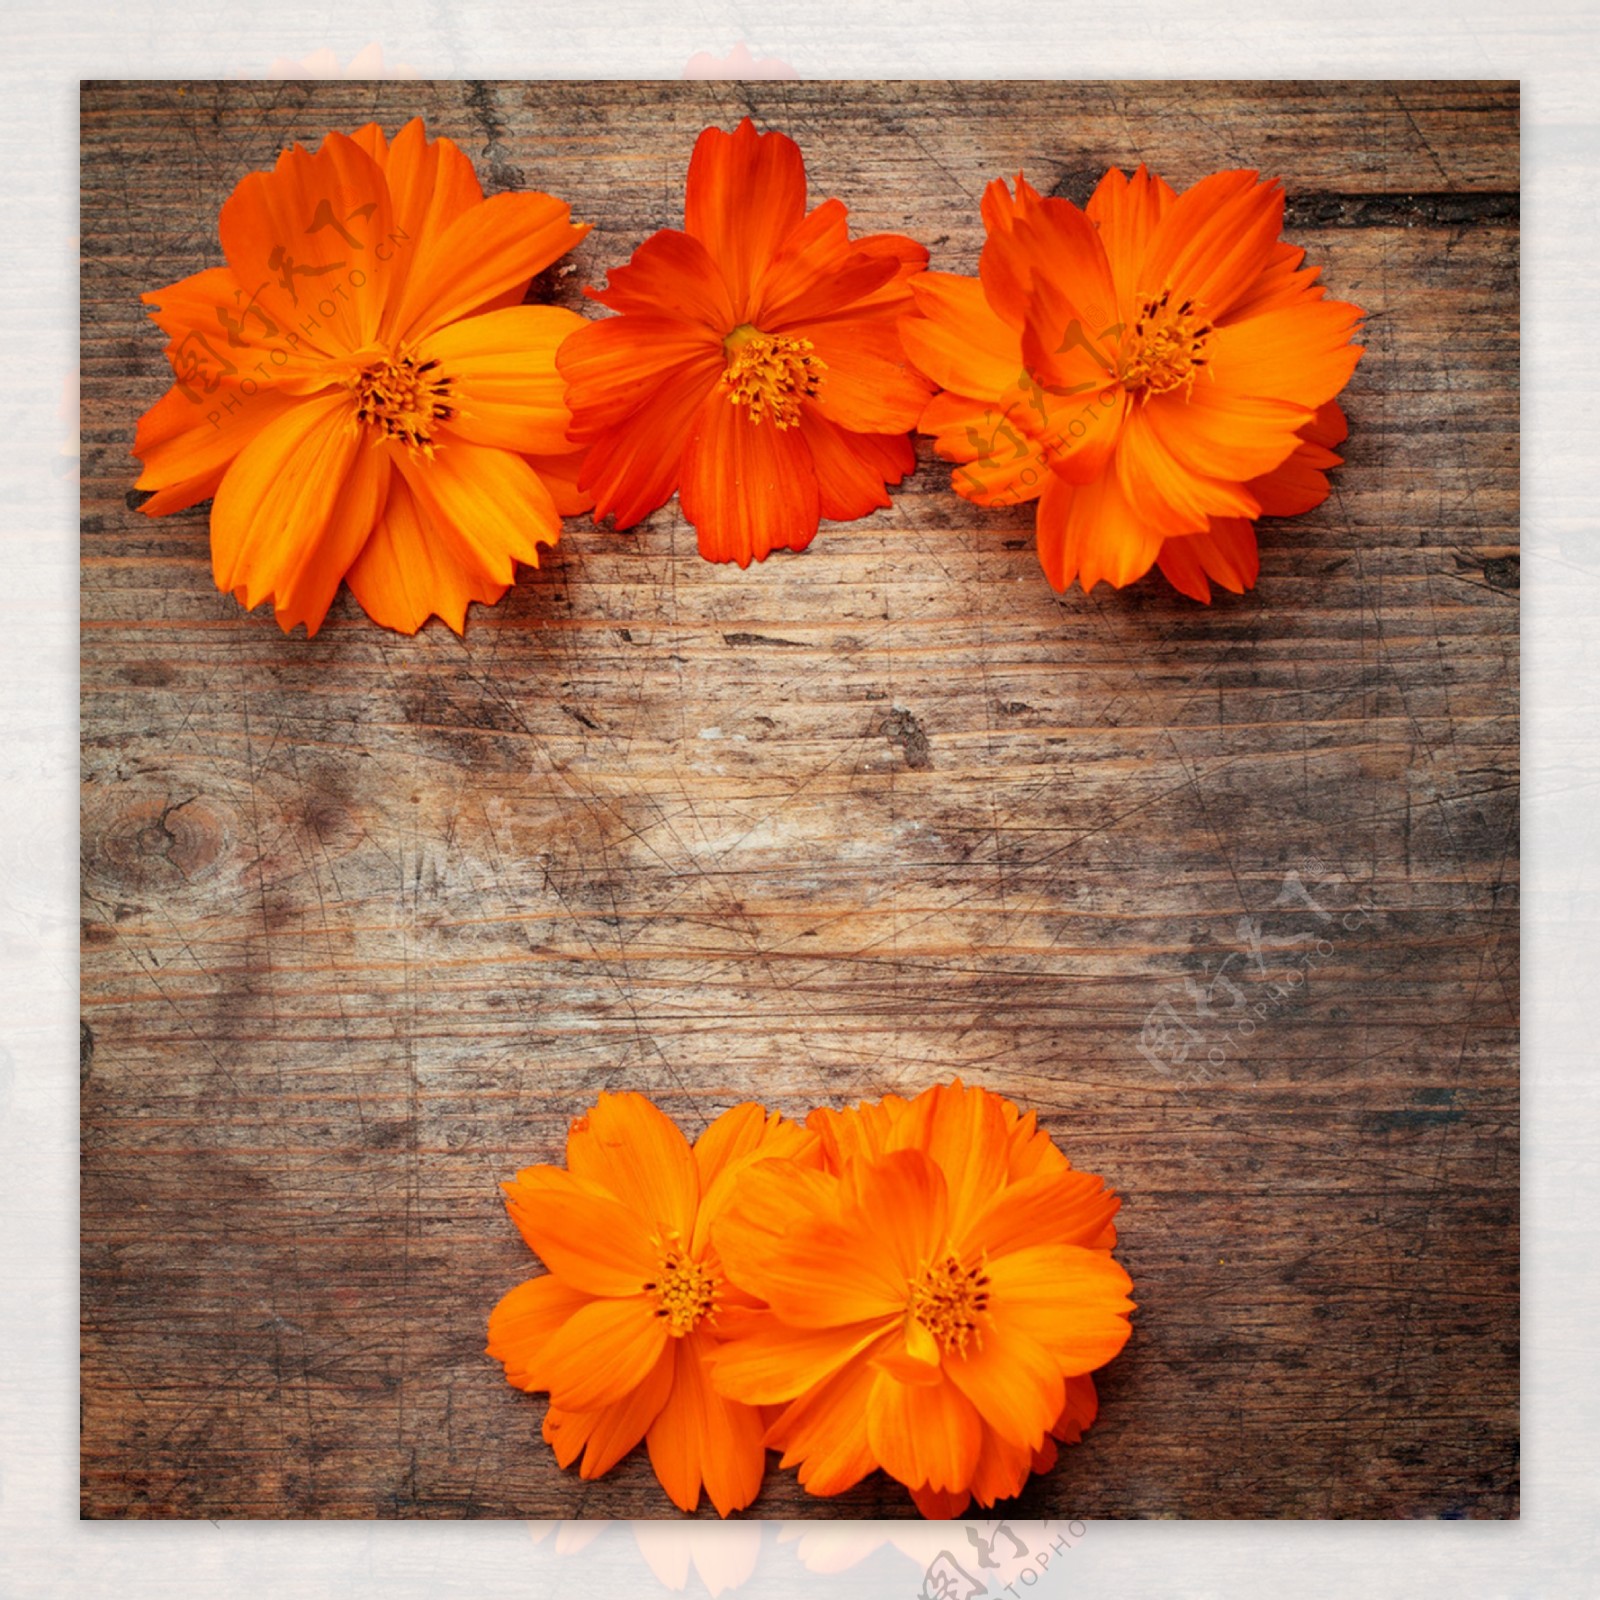 橙色花朵木板背景